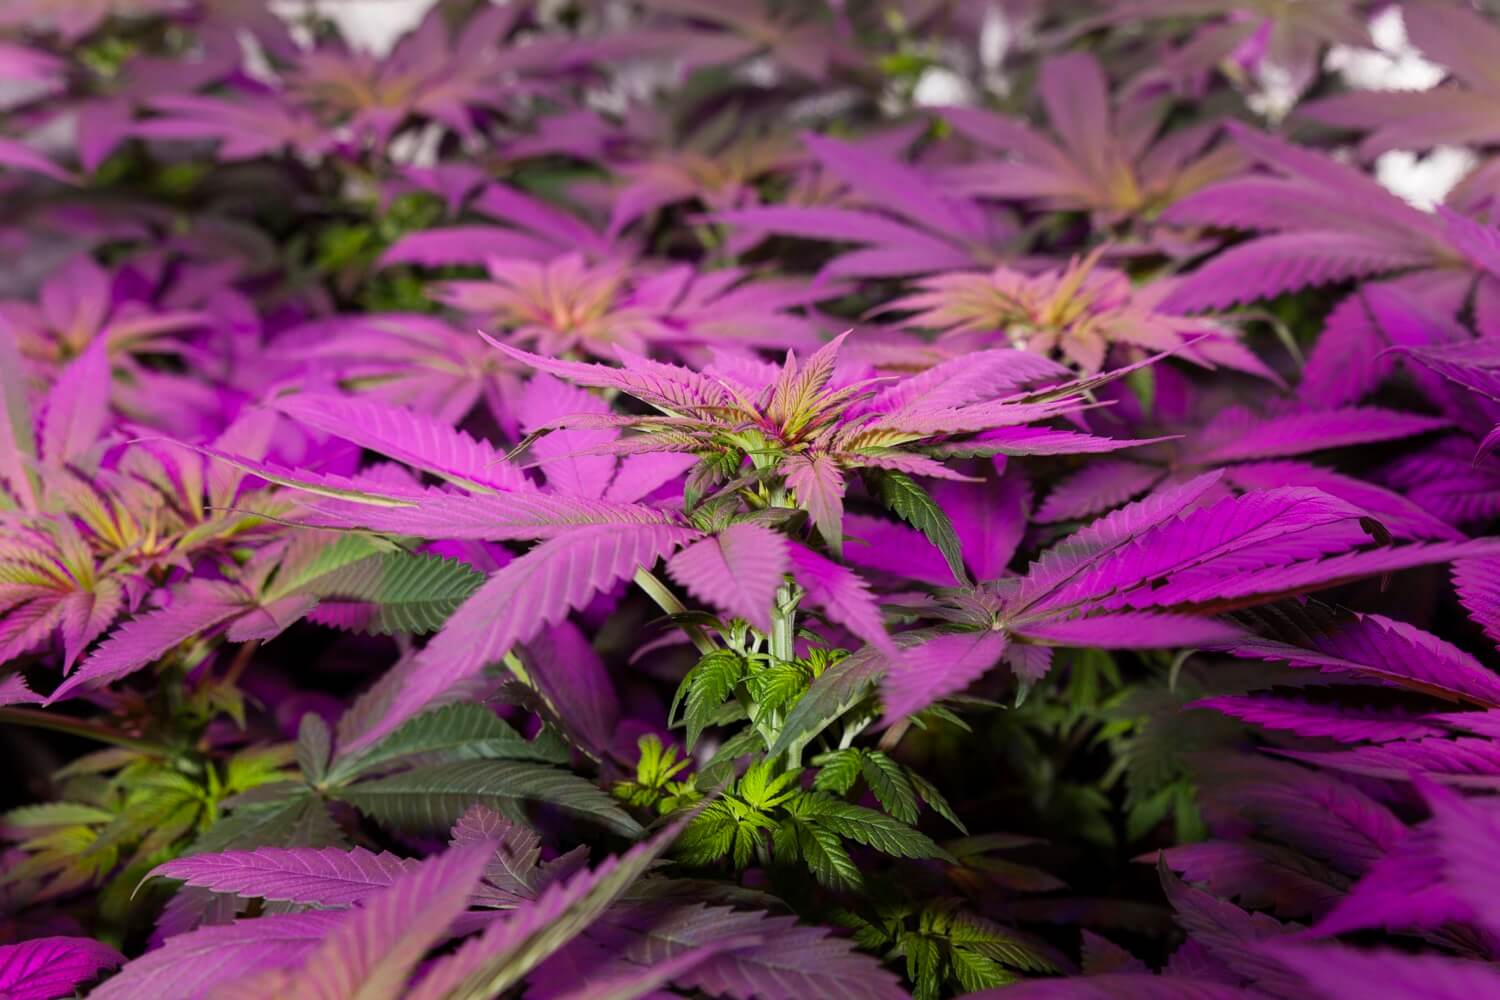 Cultivo interior de cannabis en verano